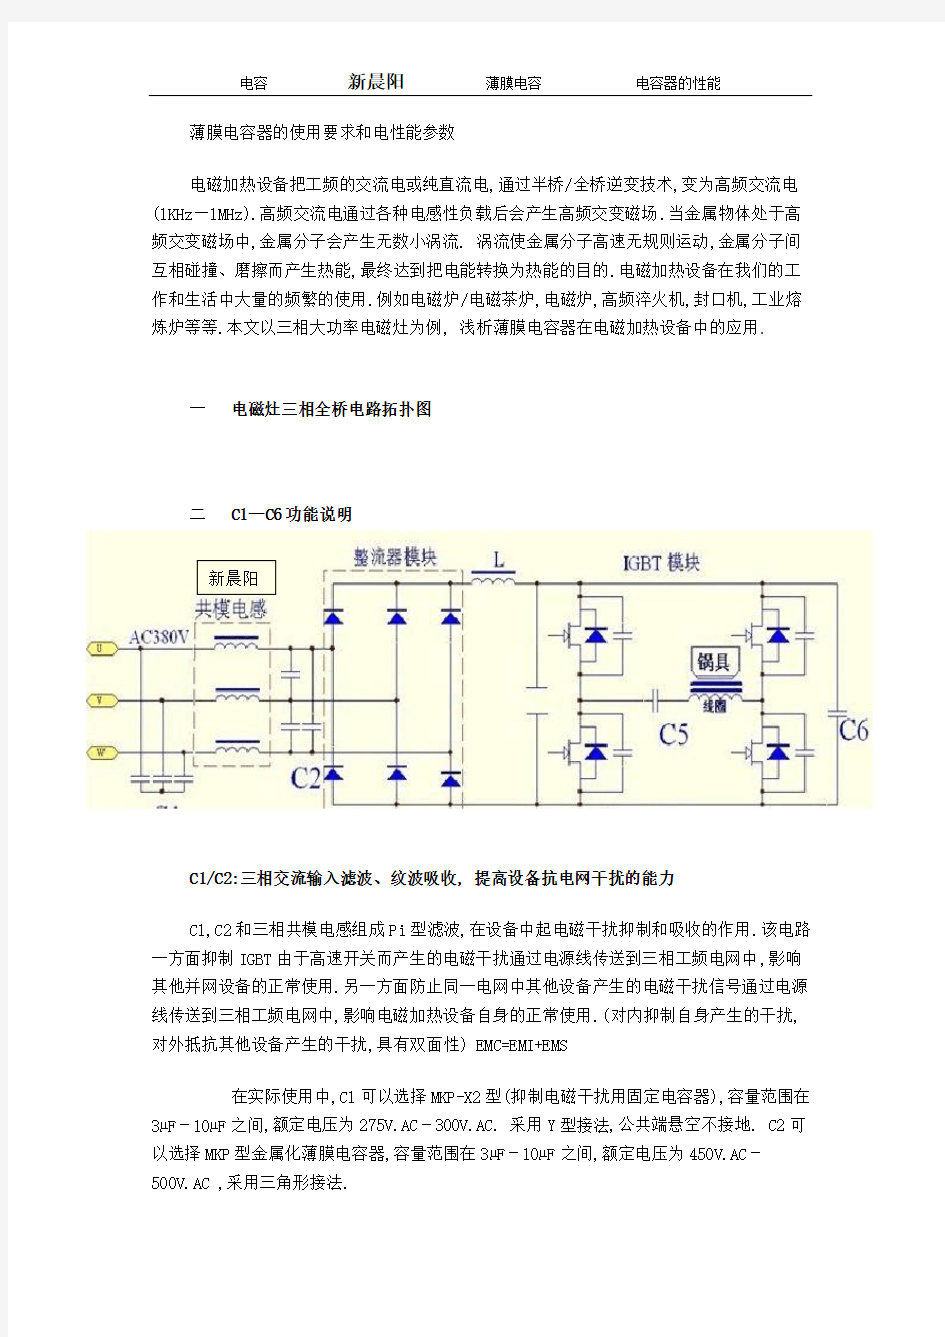 薄膜电容器的使用要求和电性能参数